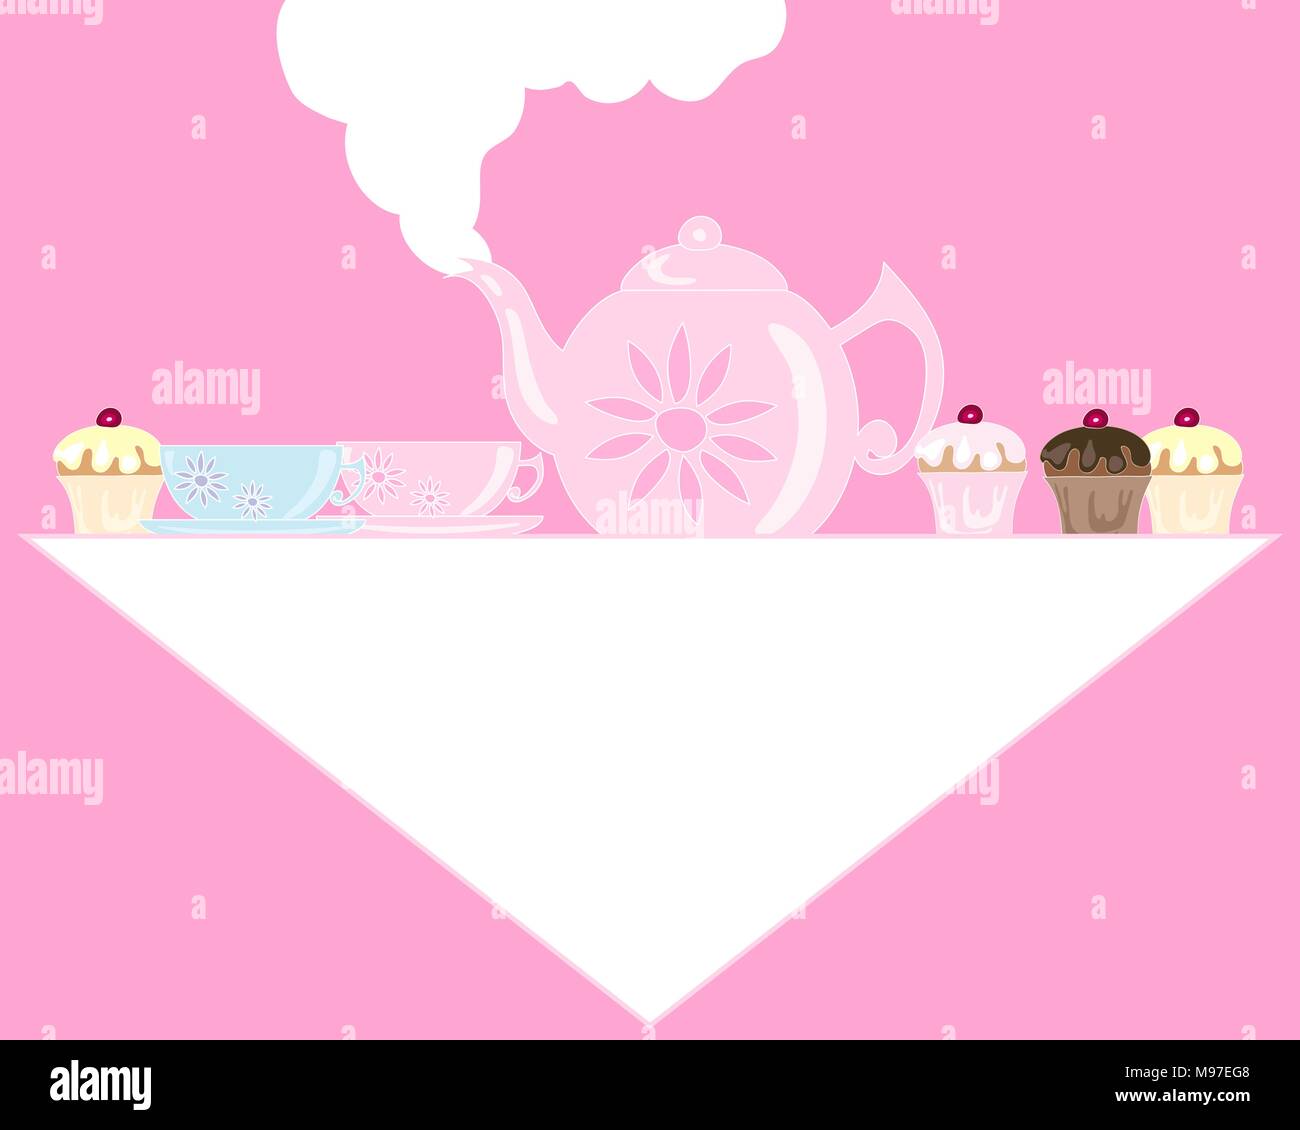 Un vecteur illustration au format eps d'un pot de thé rose avec des tasses et soucoupes sur une nappe blanche avec petits gâteaux décorés Illustration de Vecteur